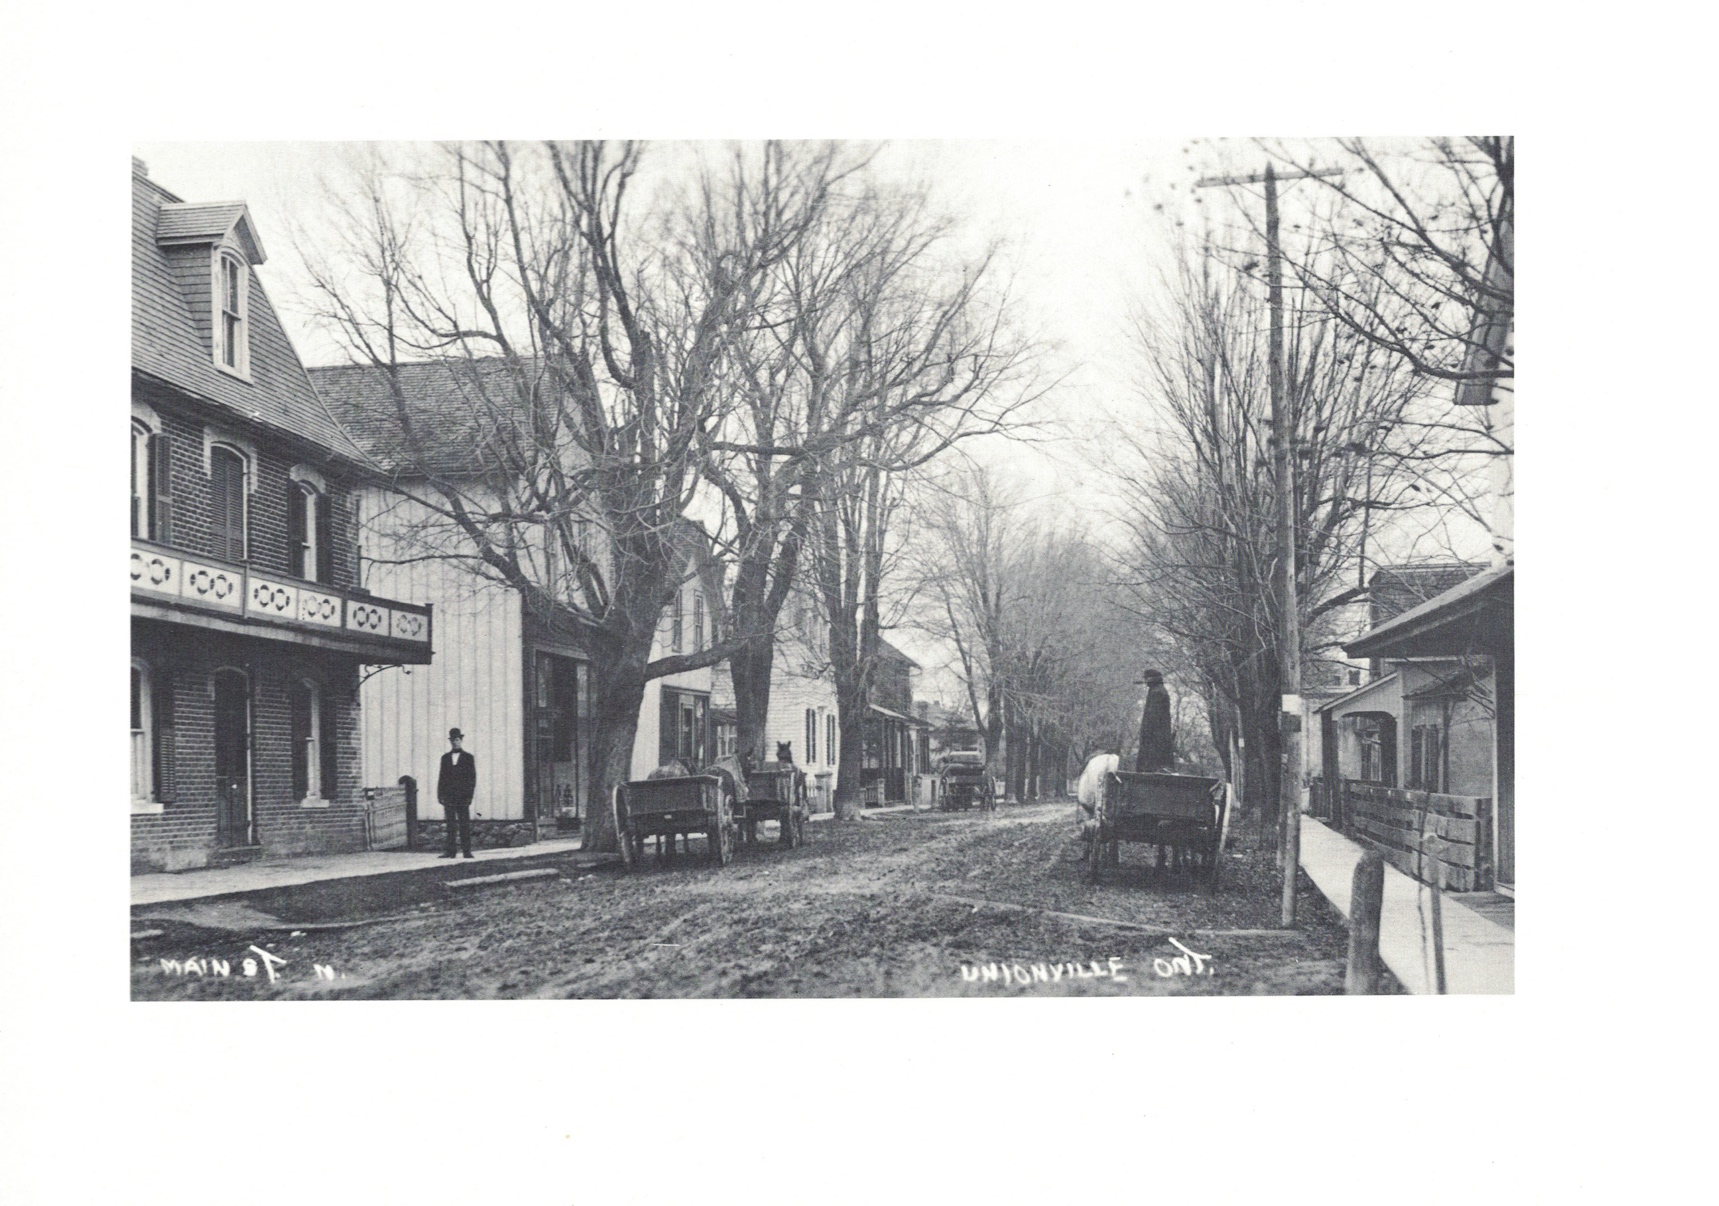 Historic photo of Main Street Unionville